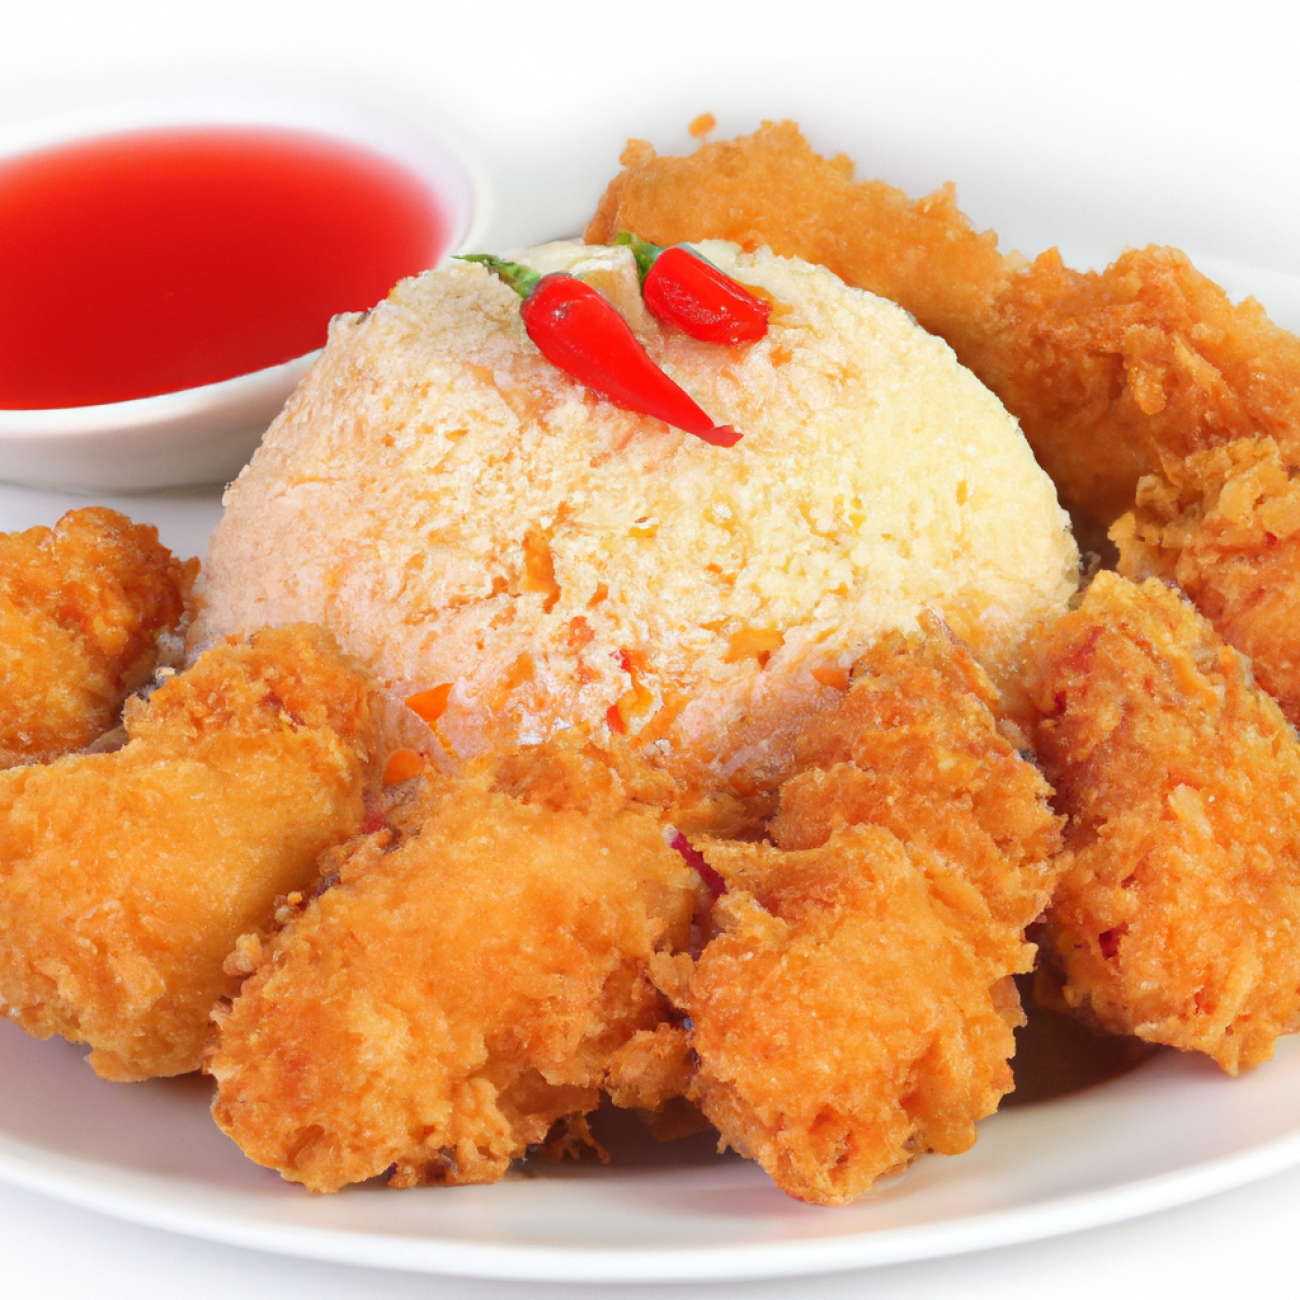 6. Zázračné Kombinace: Neotřelé chuťové kombinace v Kung Pao kuchaři